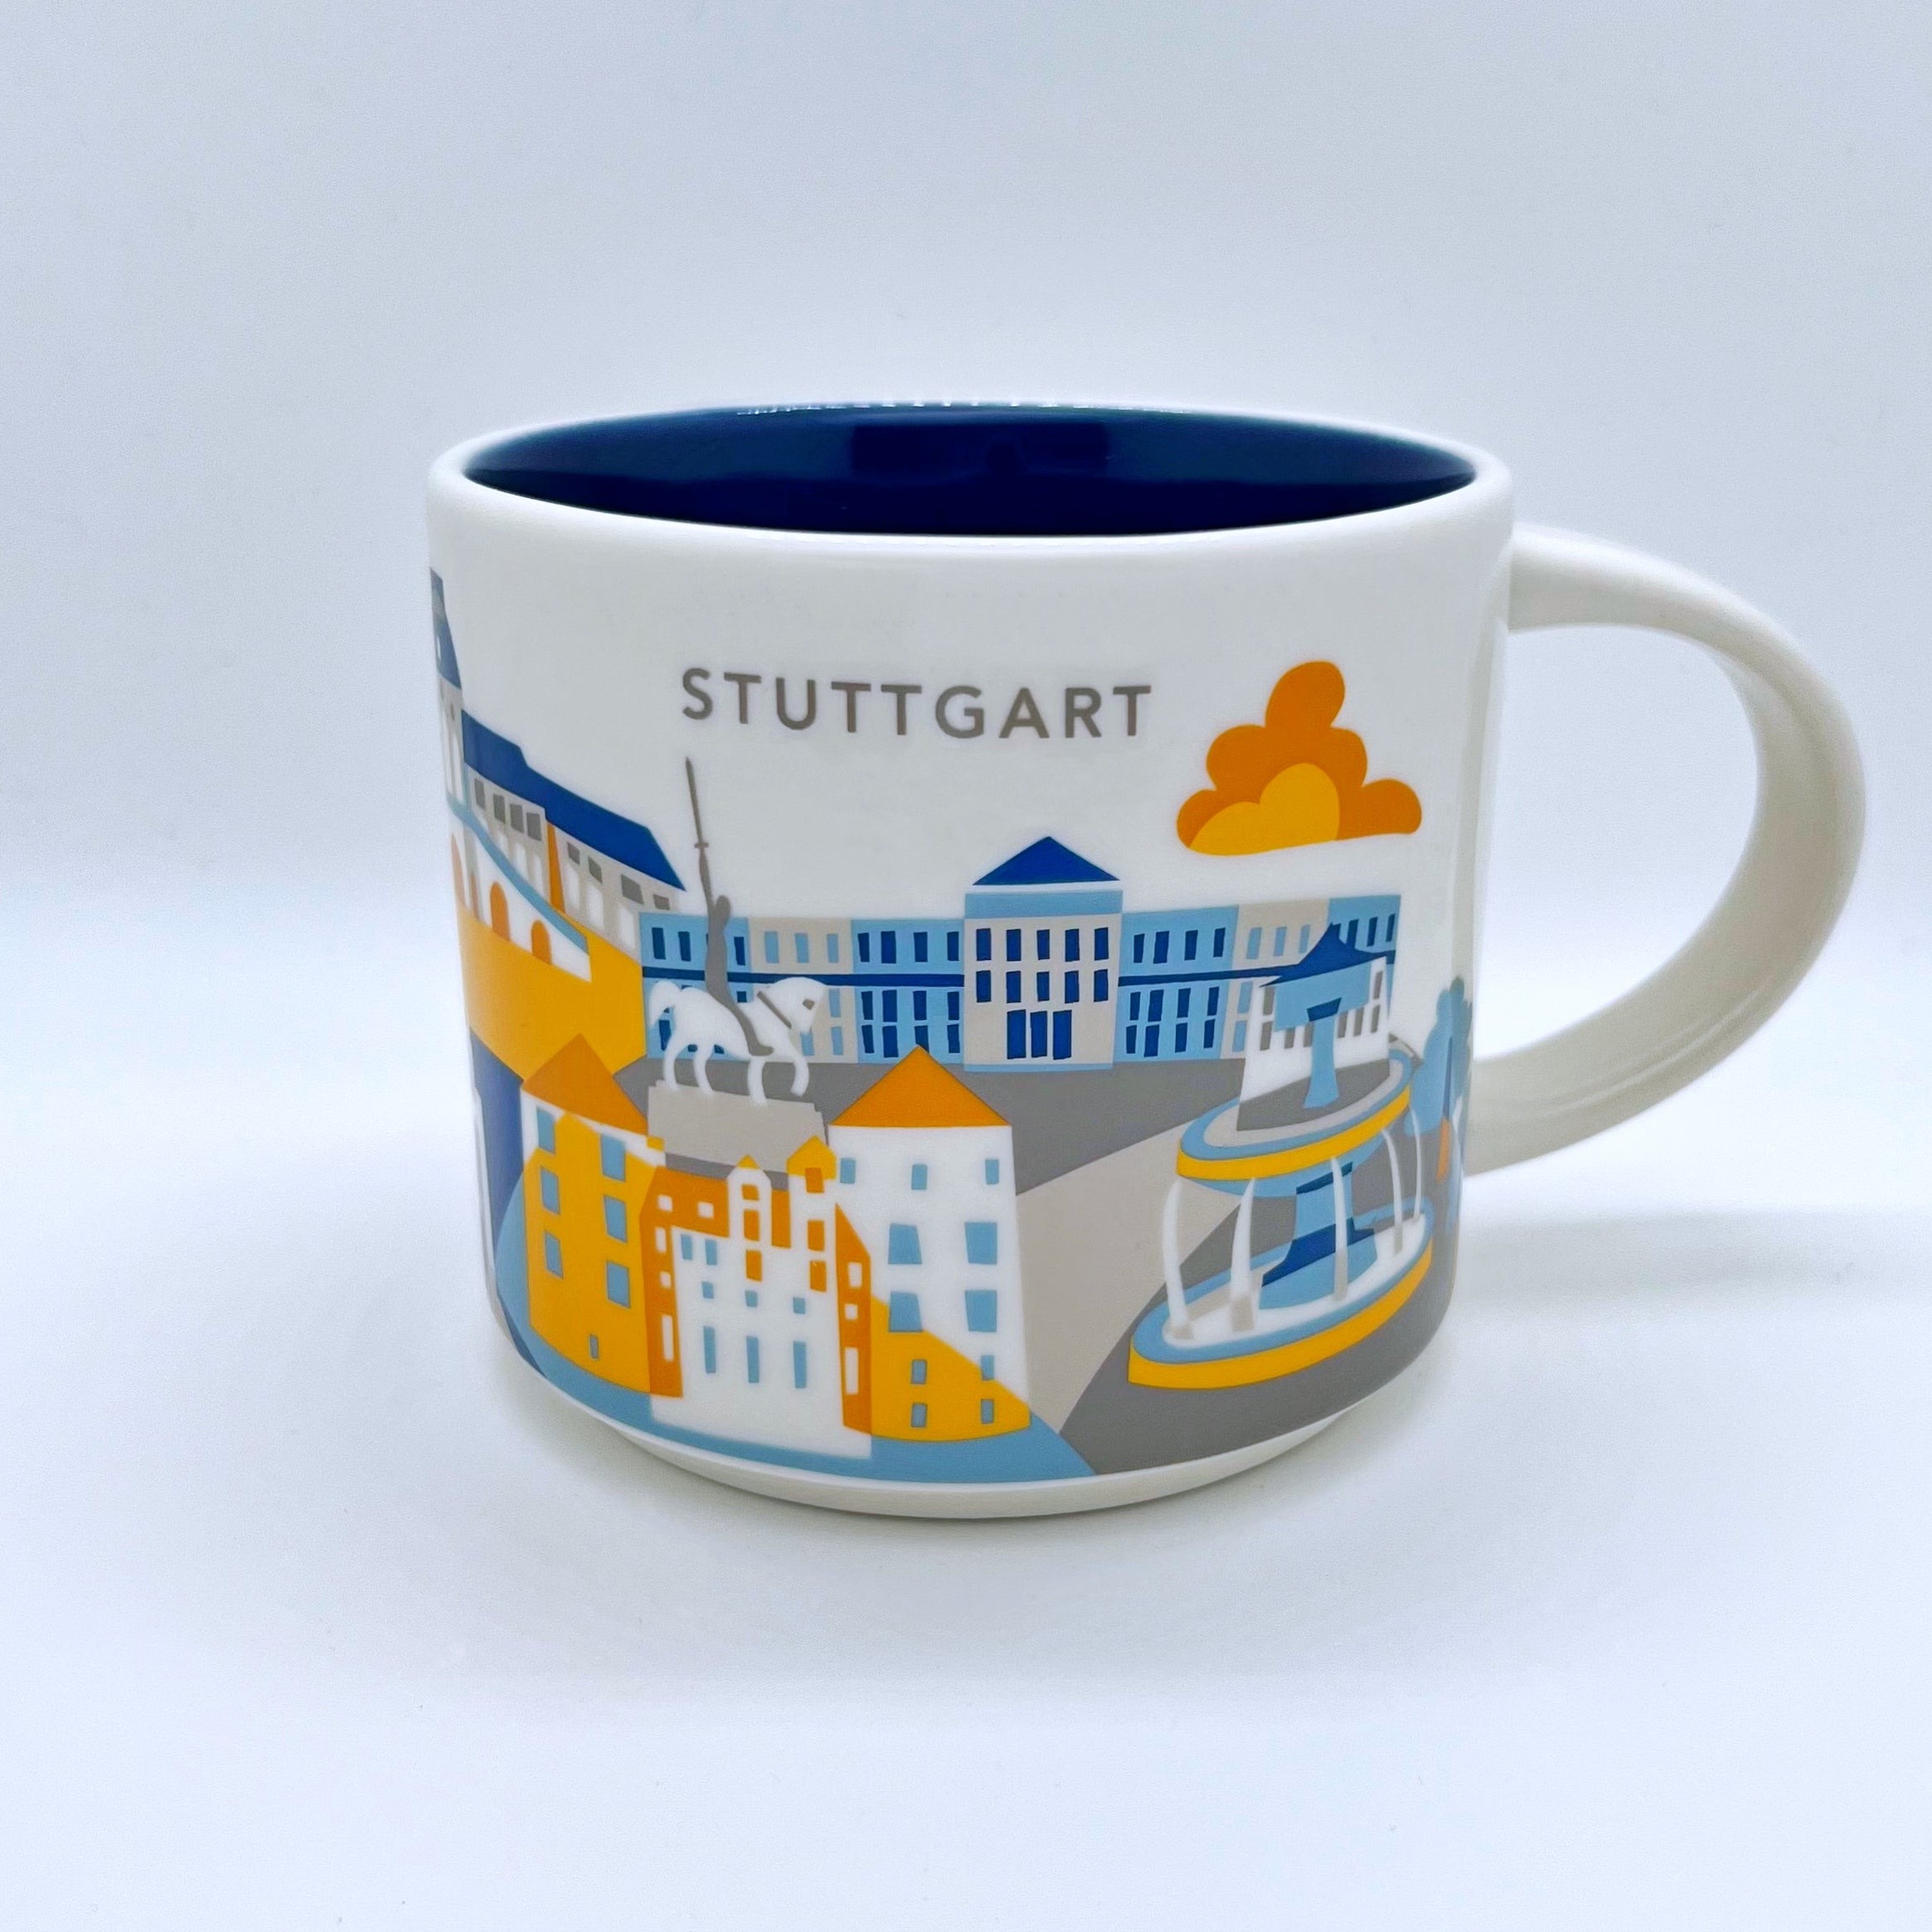 Kaffee Tee und Cappuccino Tasse von Starbucks mit gemalten Bildern aus der Stadt Stuttgart